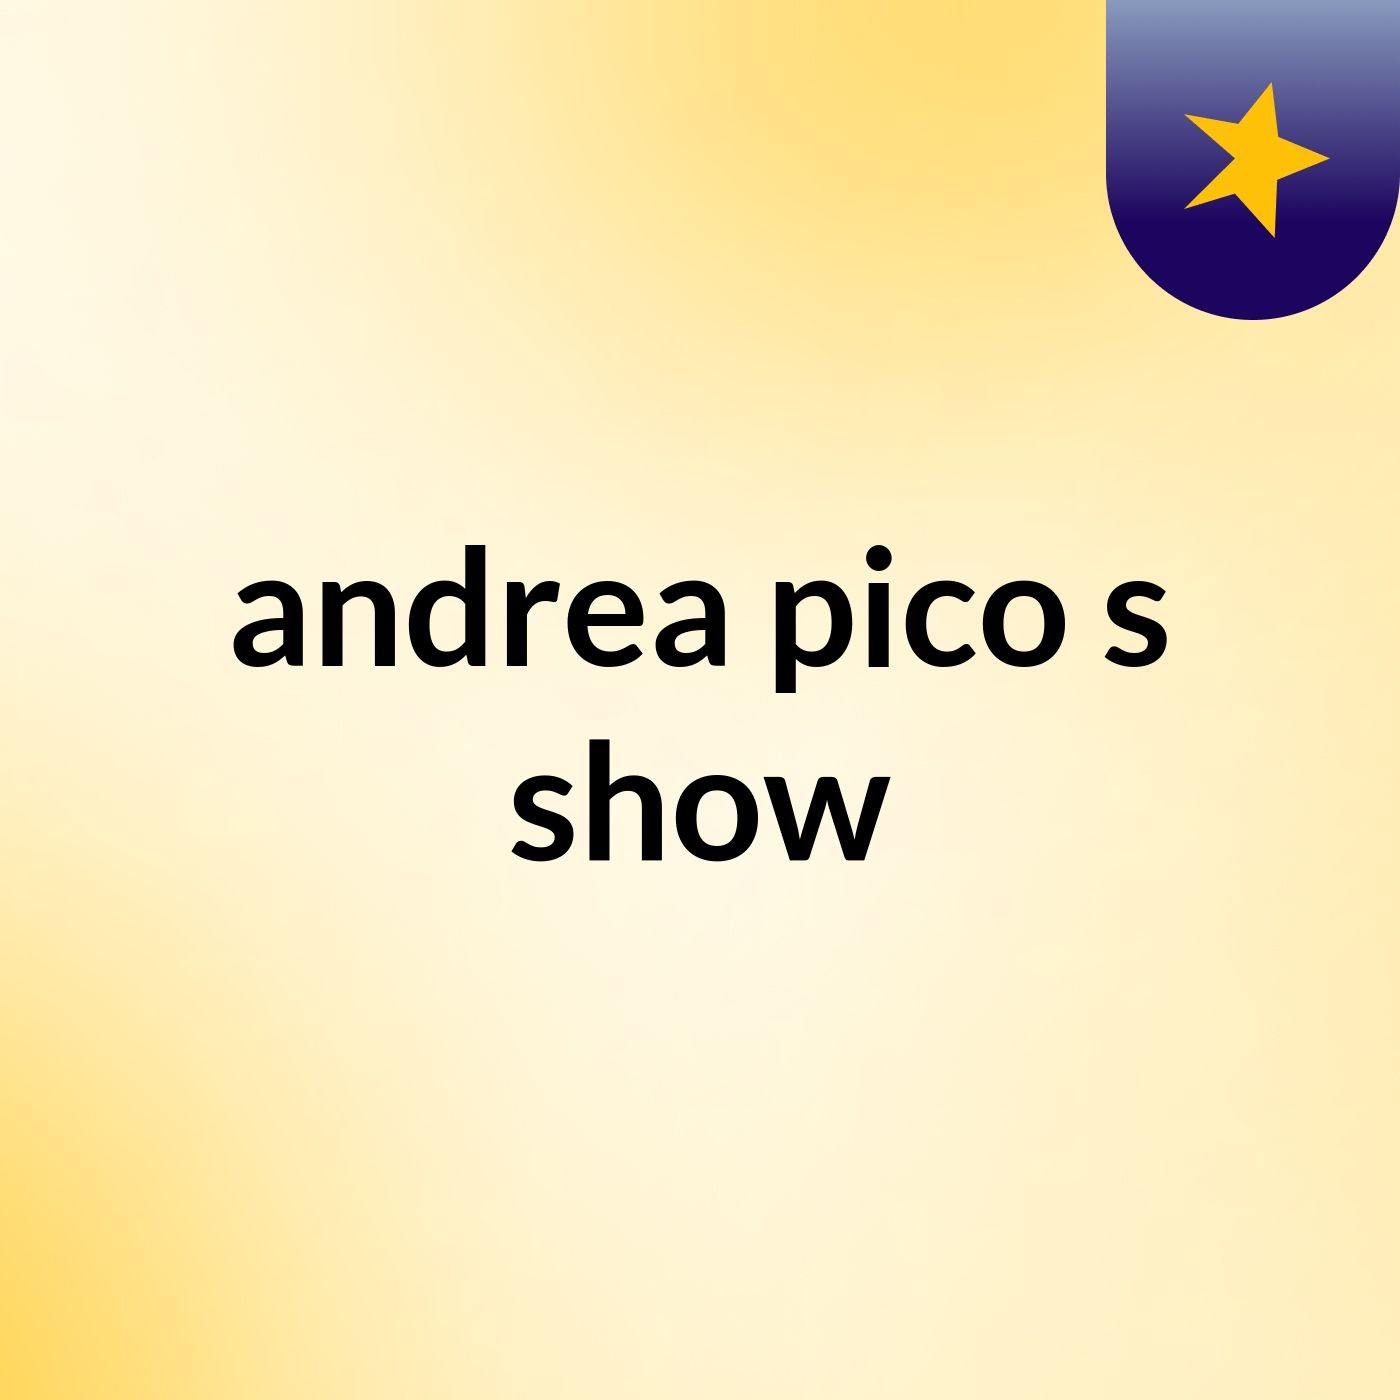 andrea pico's show